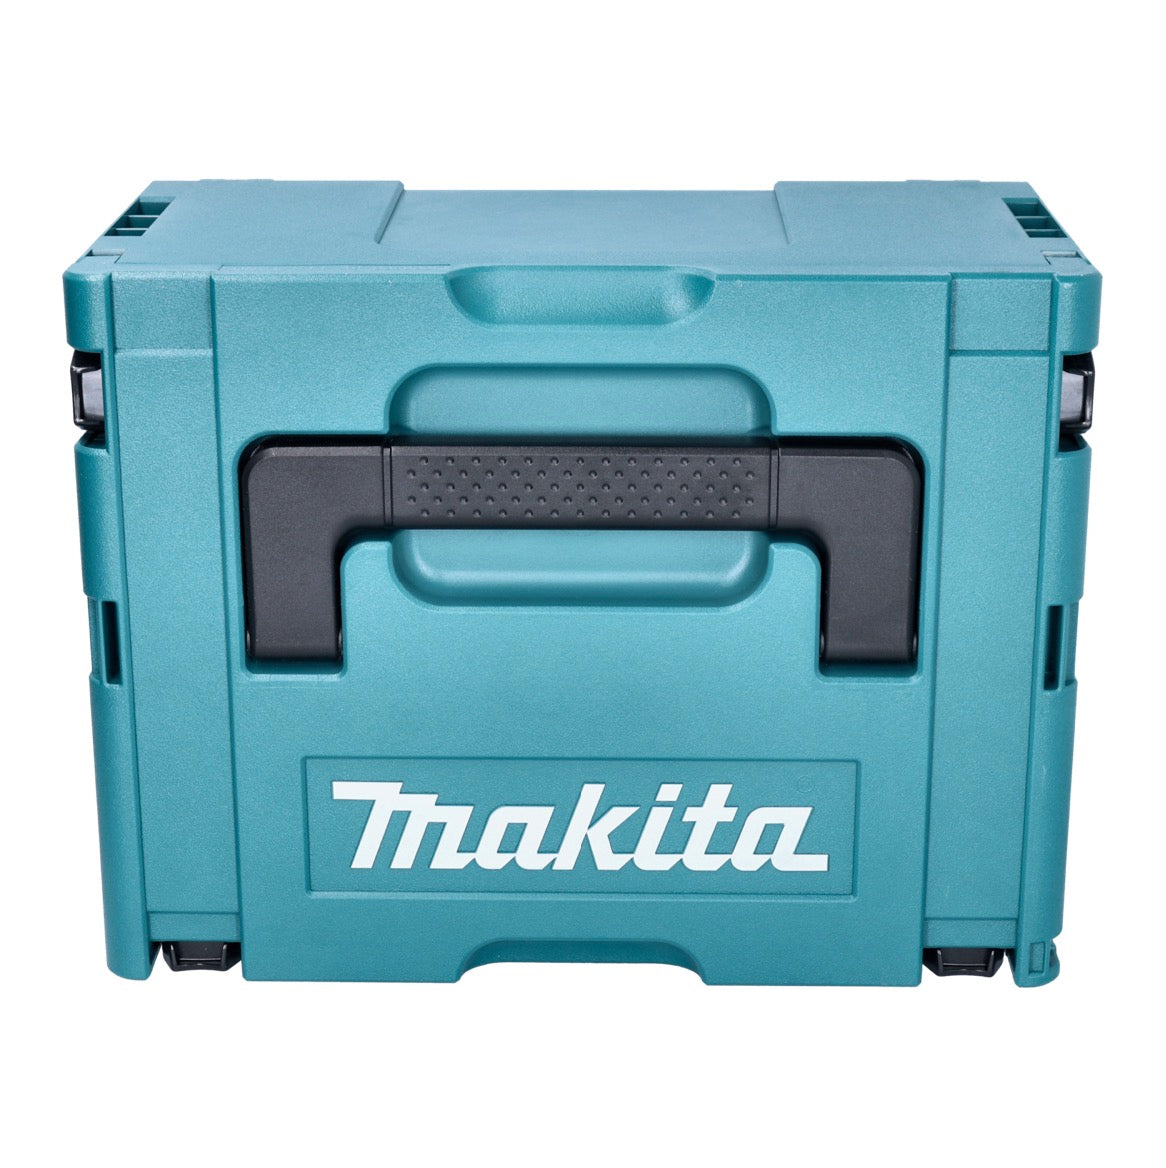 Makita DAS 180 T1J Akku Gebläse 18 V Brushless + 1x Akku 5,0 Ah + Makpac - ohne Ladegerät - Toolbrothers